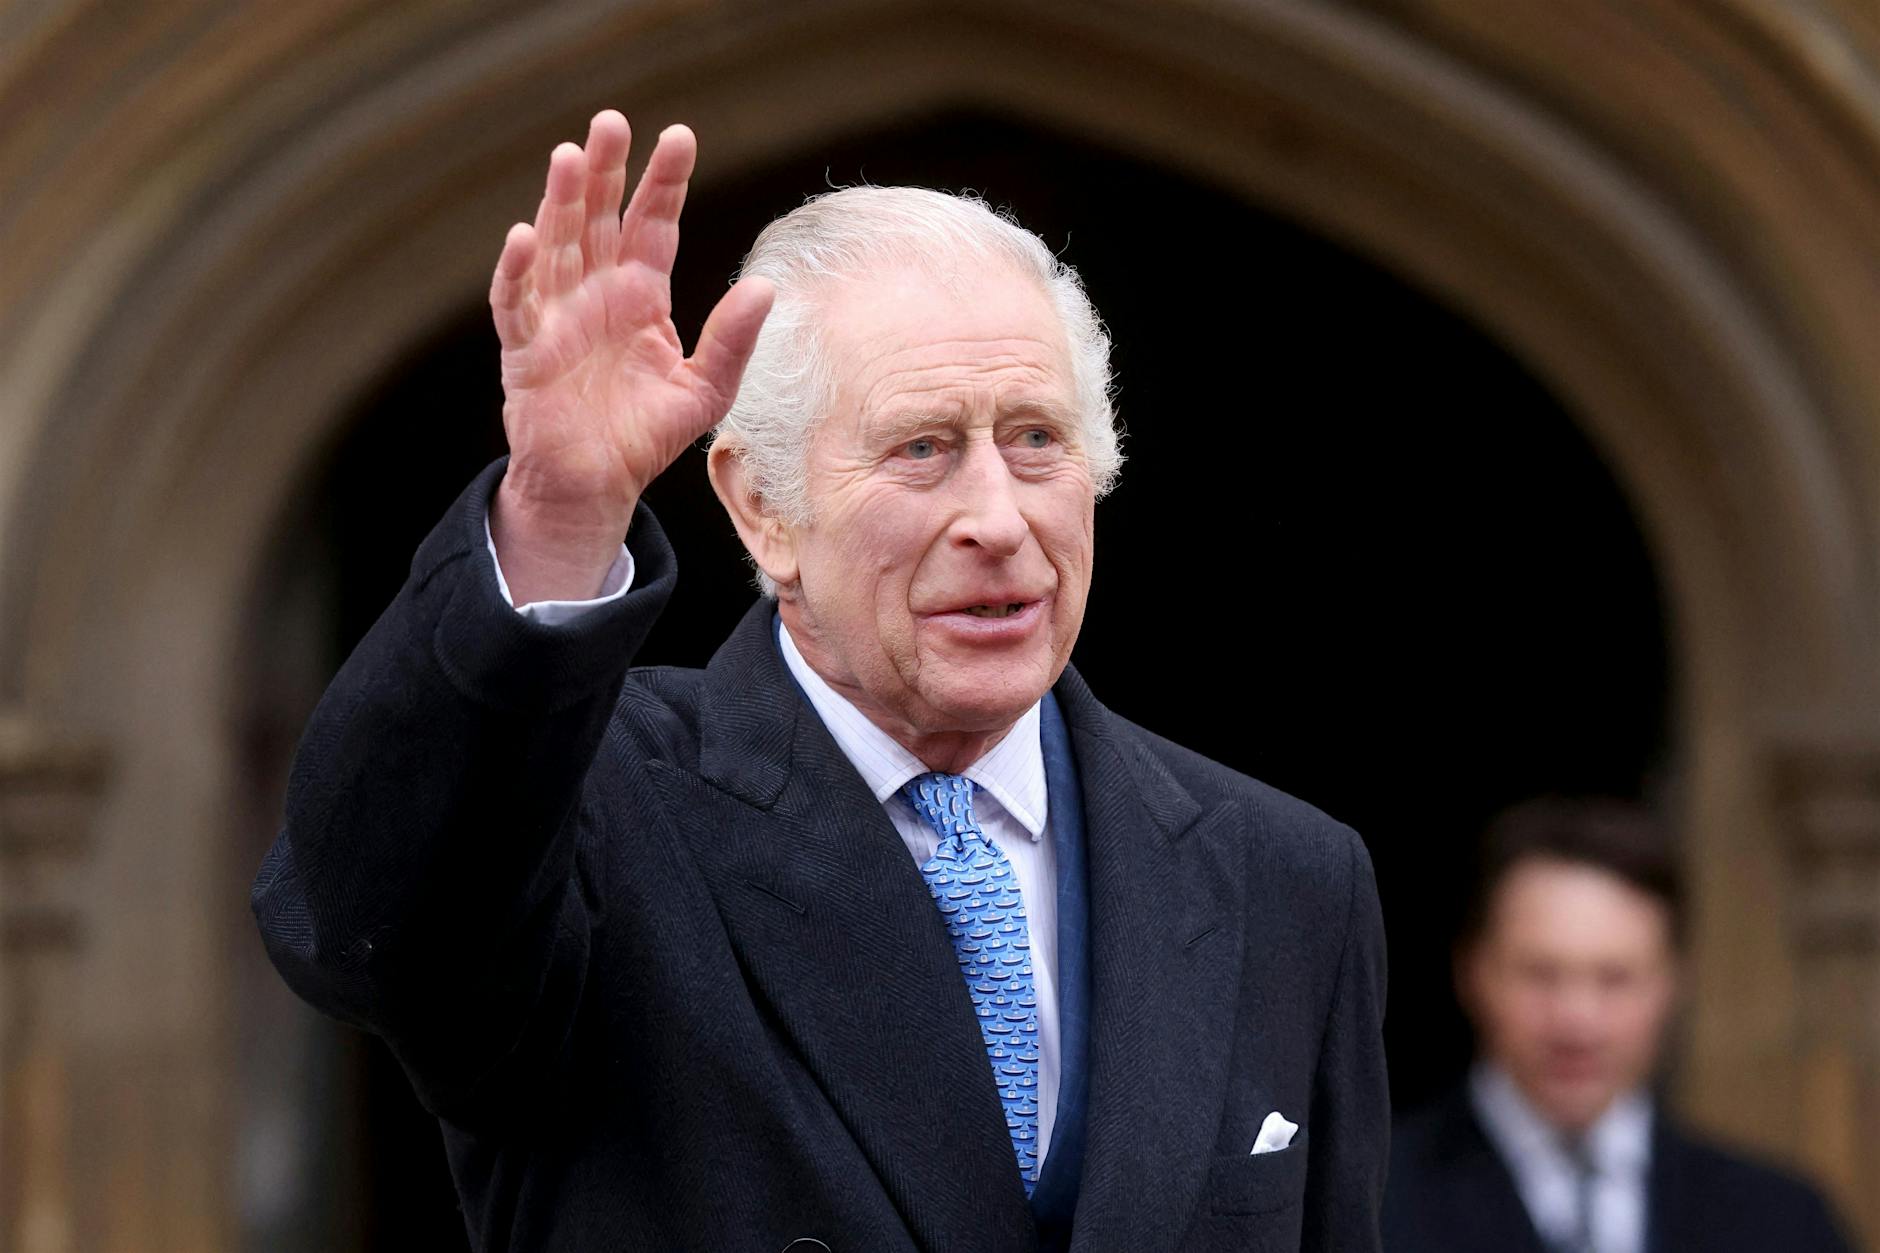 Krebstherapie schlägt an: König Charles III. nimmt wieder Termine wahr – Ärzte zufrieden